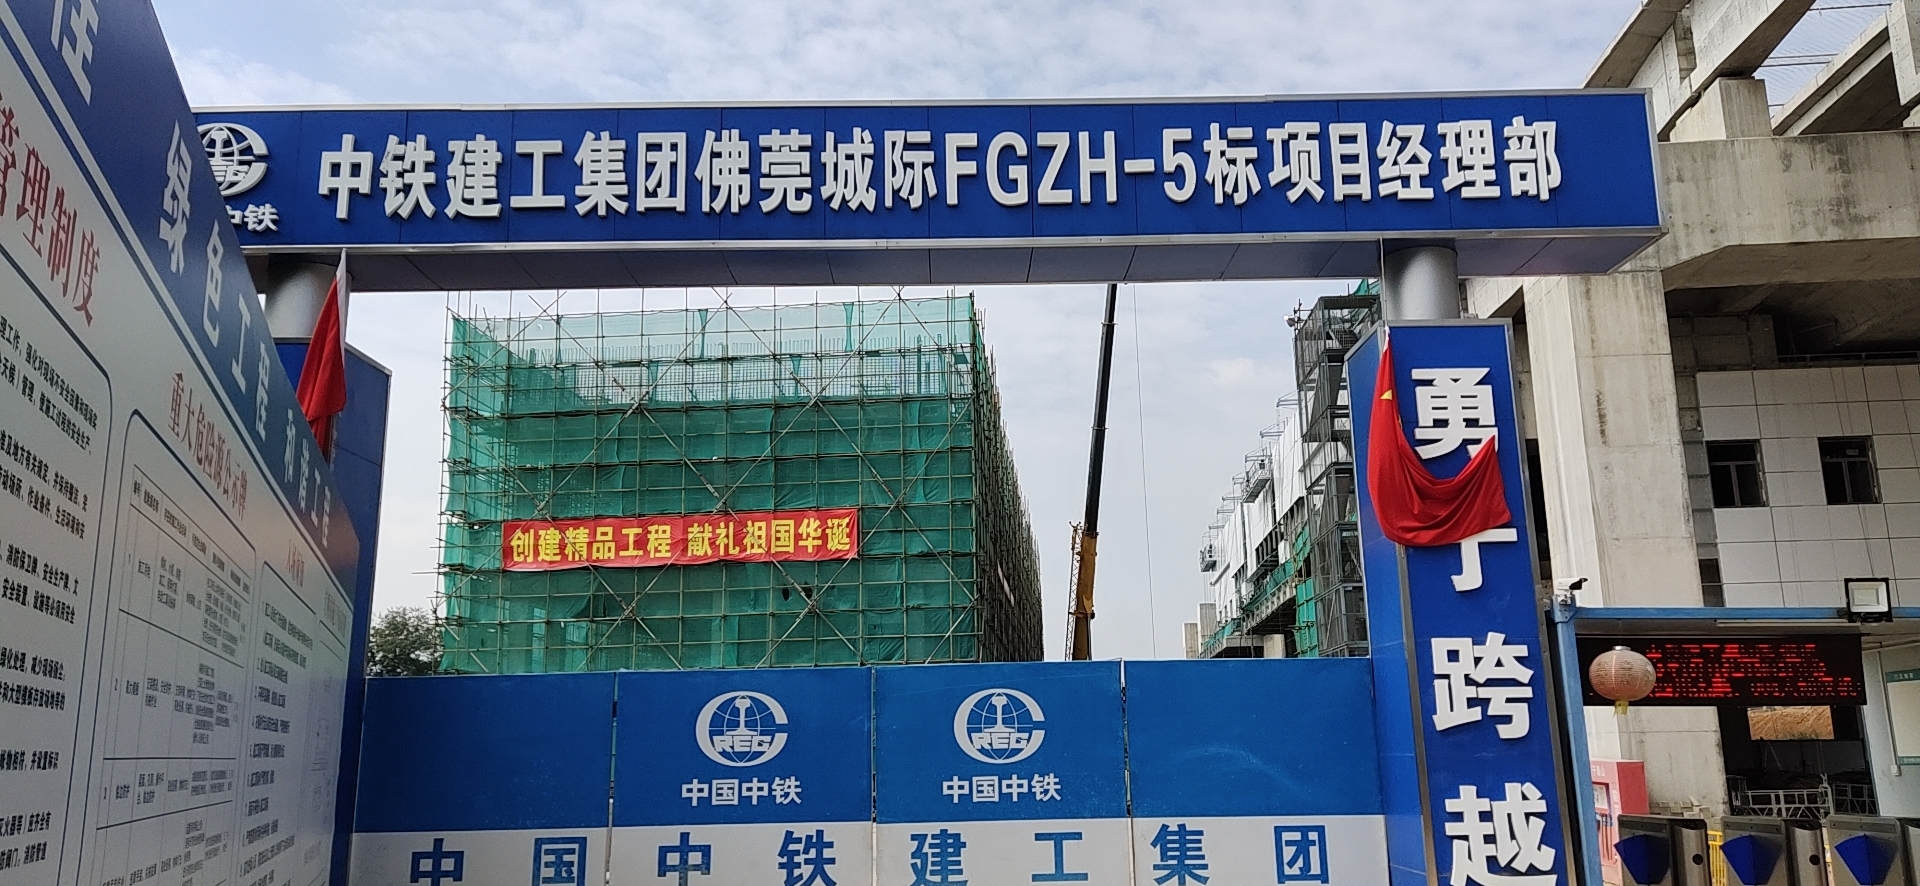 【客户案例】中铁建工集团佛莞城际FGZH-5标段